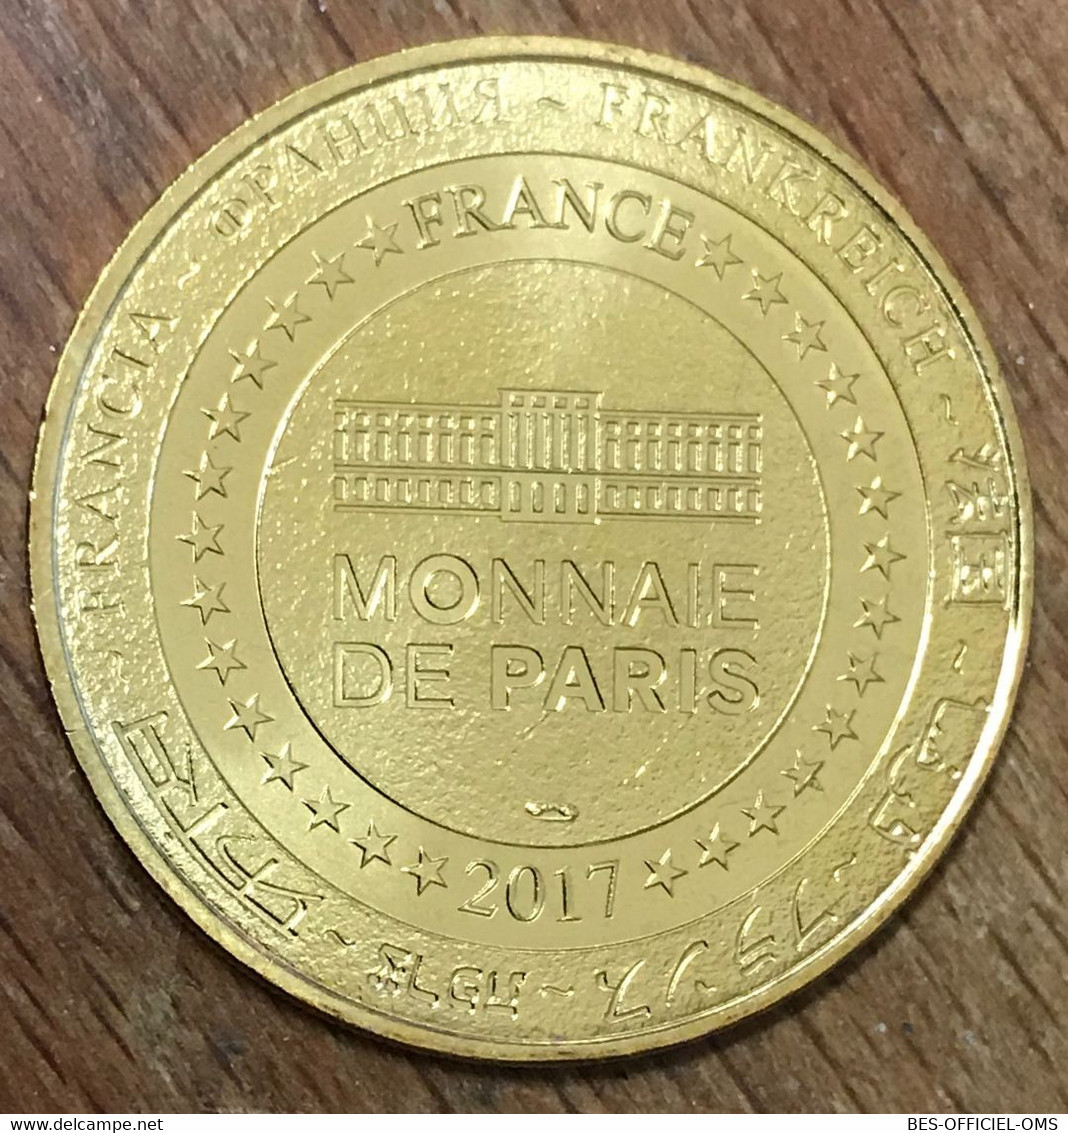 74 CHAMONIX MONT-BLANC MER DE GLACE MDP 2017 MÉDAILLE SOUVENIR MONNAIE DE PARIS JETON TOURISTIQUE MEDALS COINS TOKENS - 2017